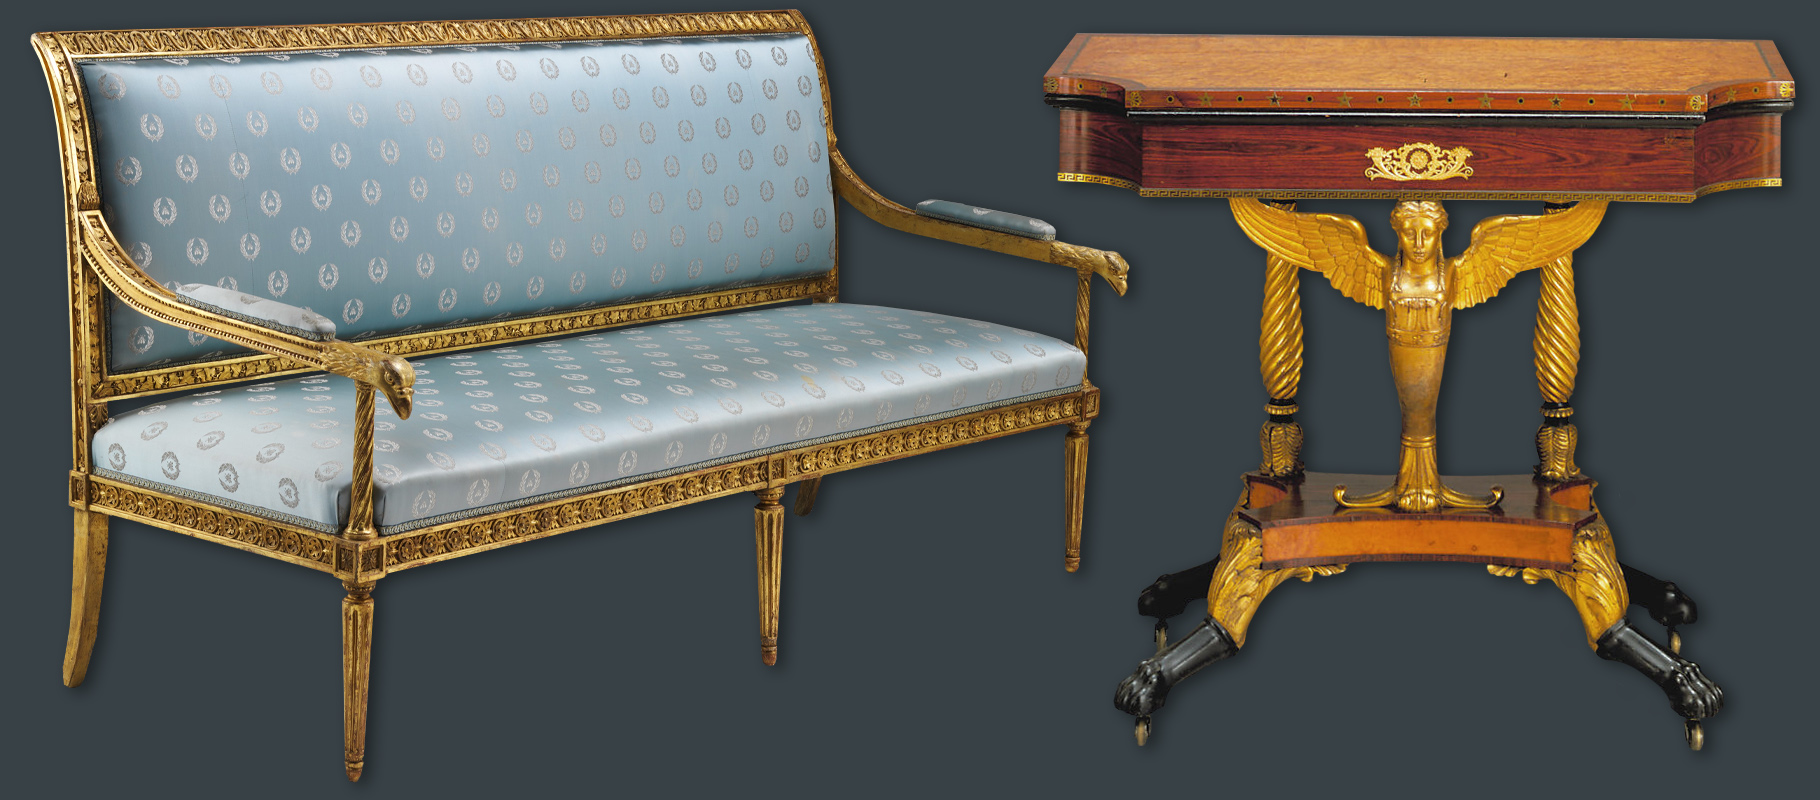 Neoclassical furniture